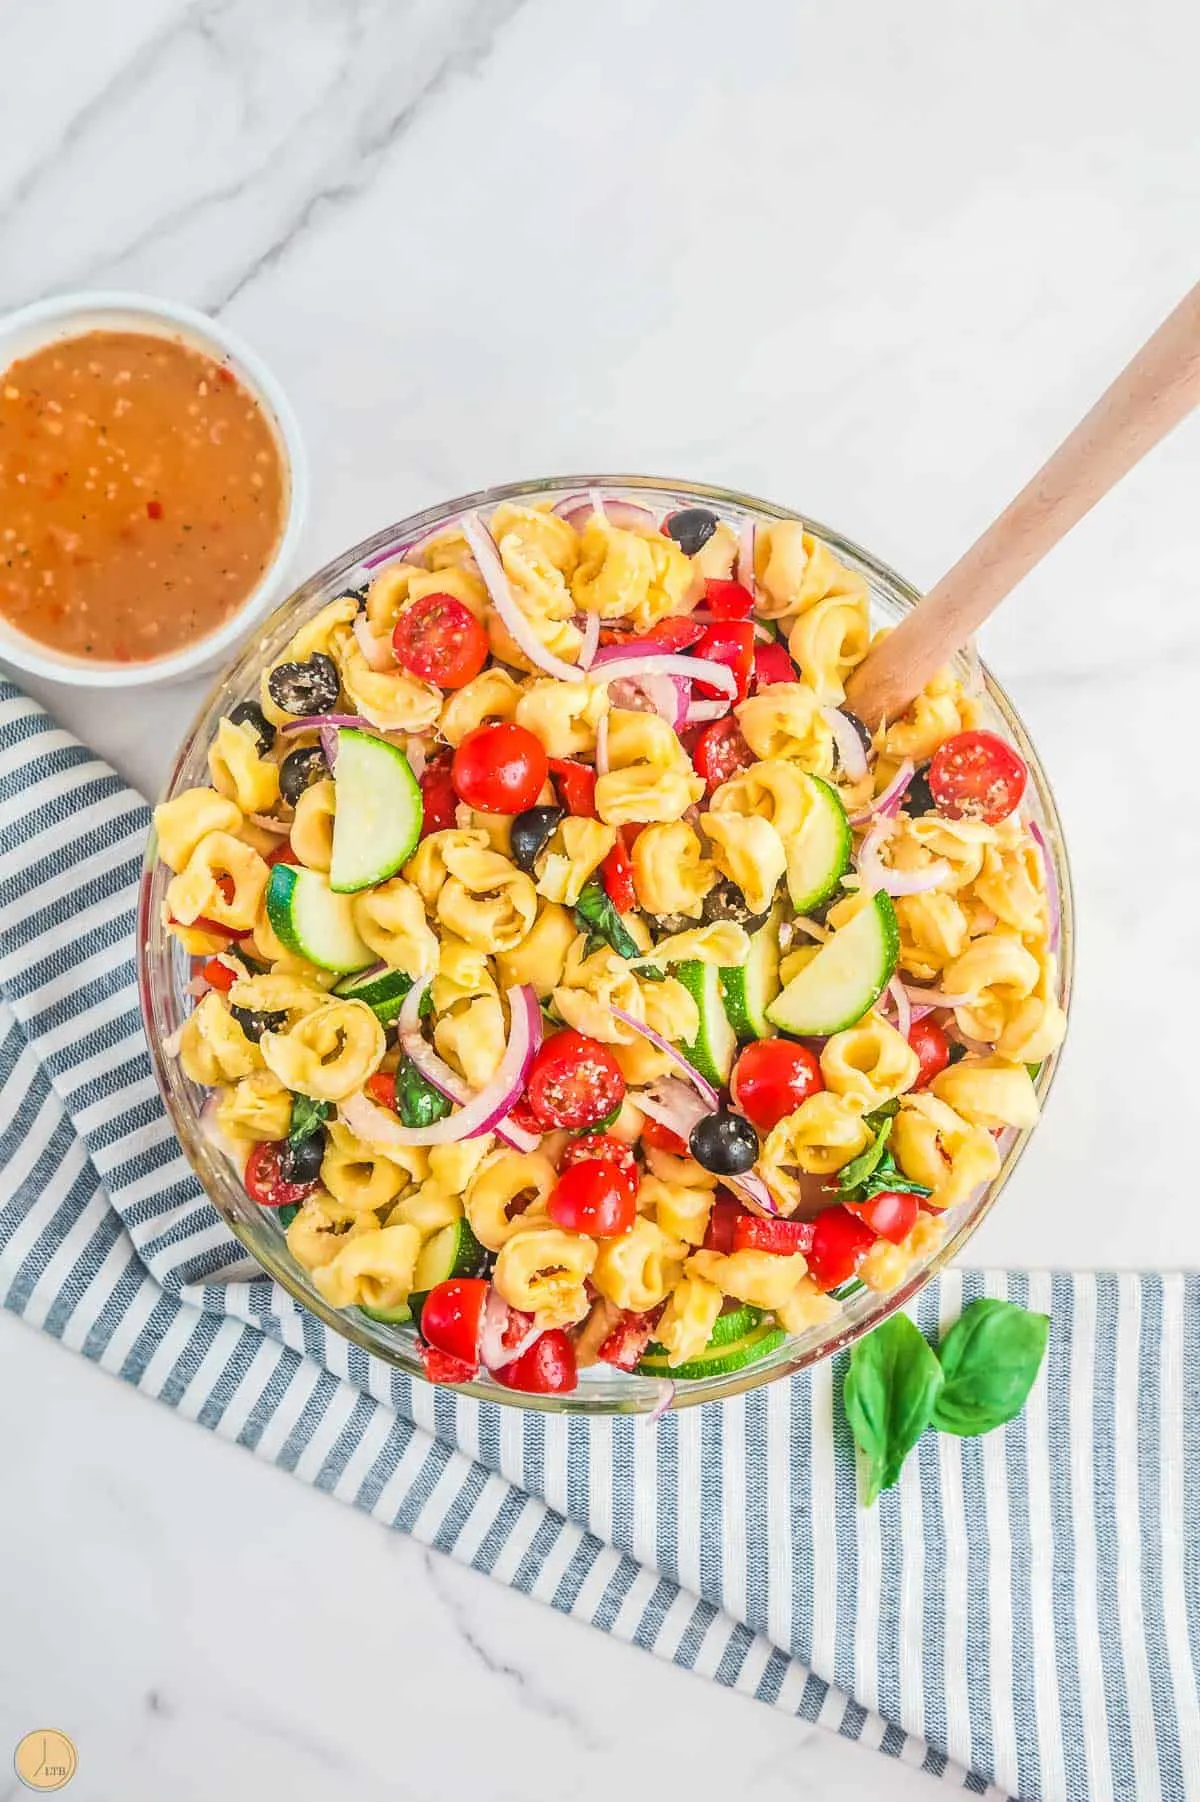 favorite pasta salad recipes